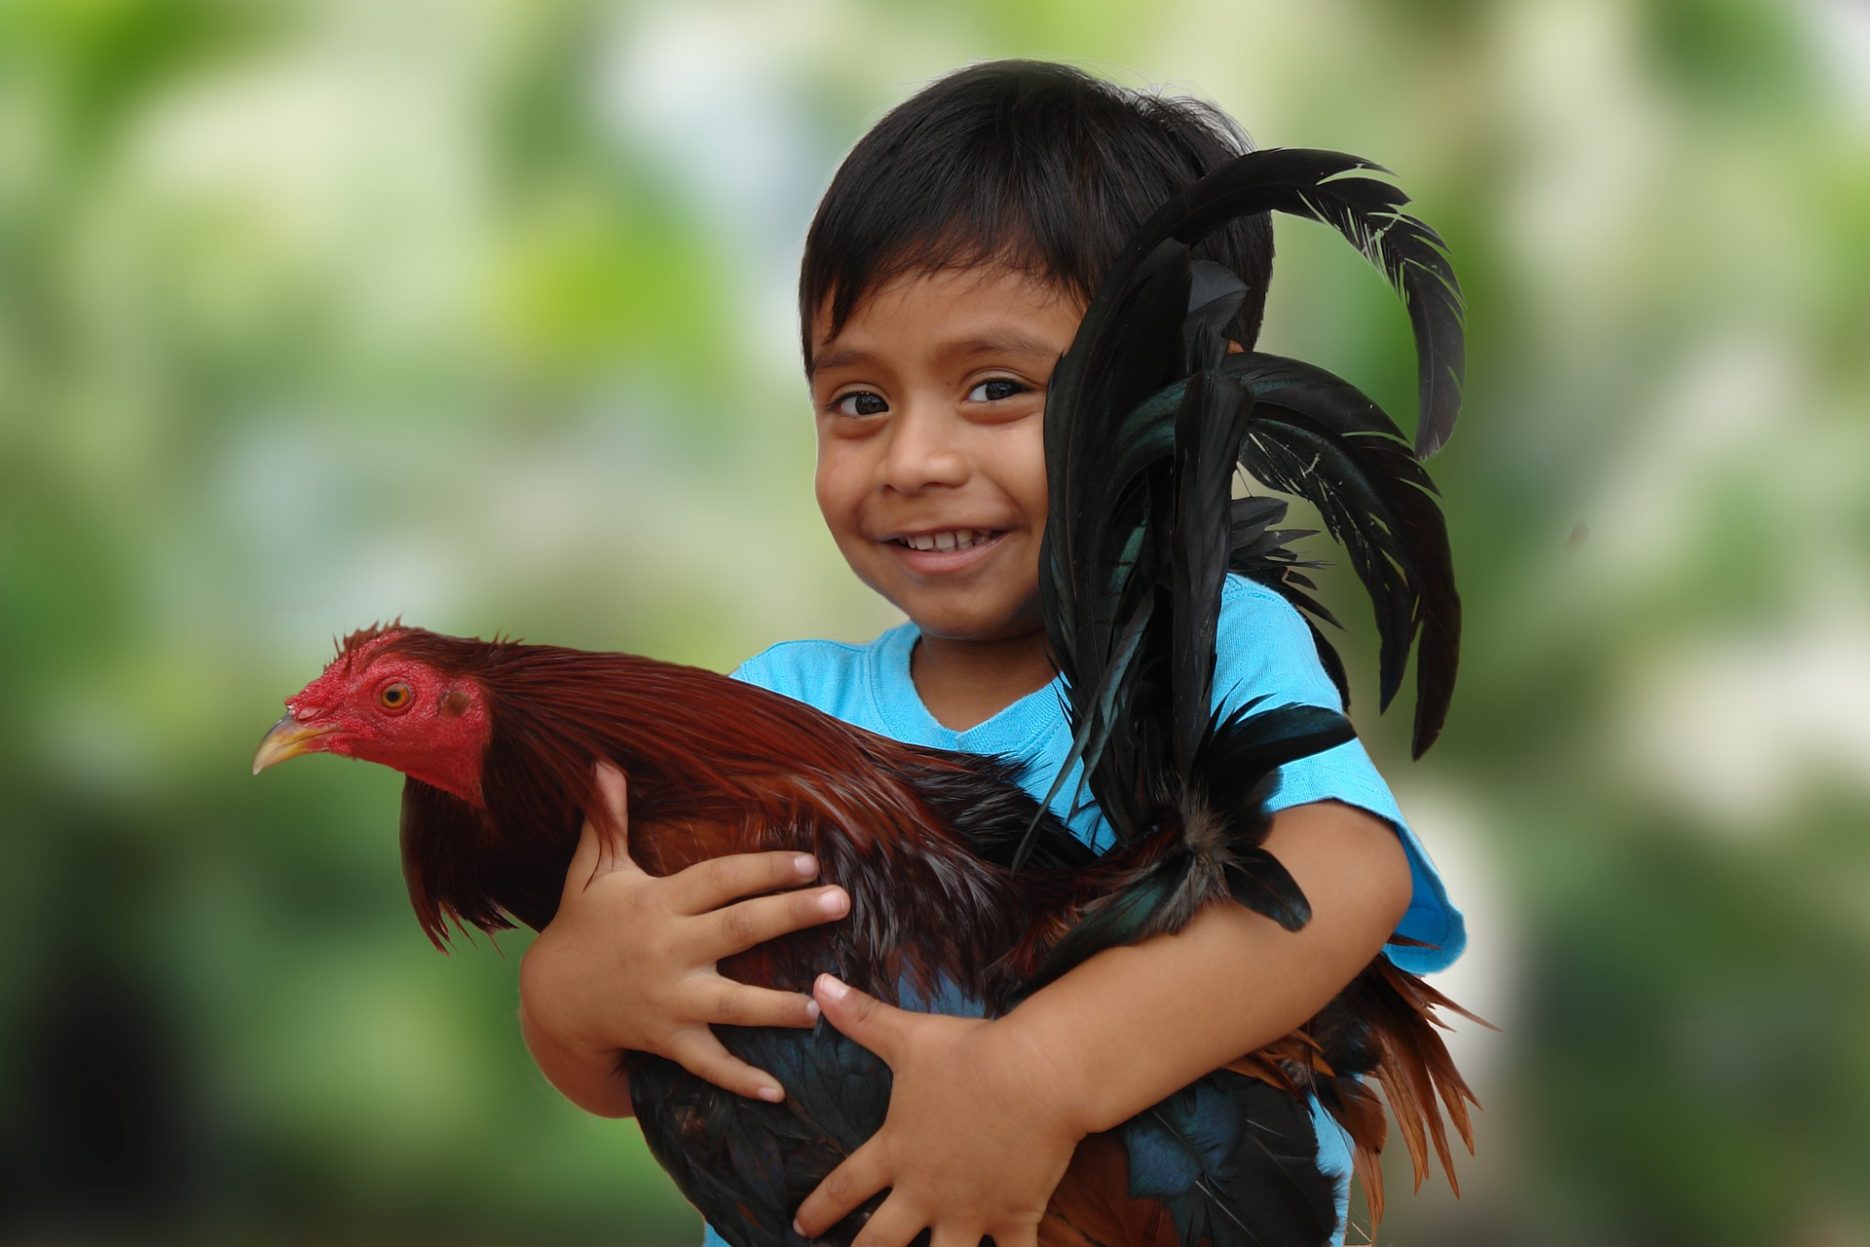 Auf dem Bild sieht man ein Kind, das einen Hahn im Arm hält.